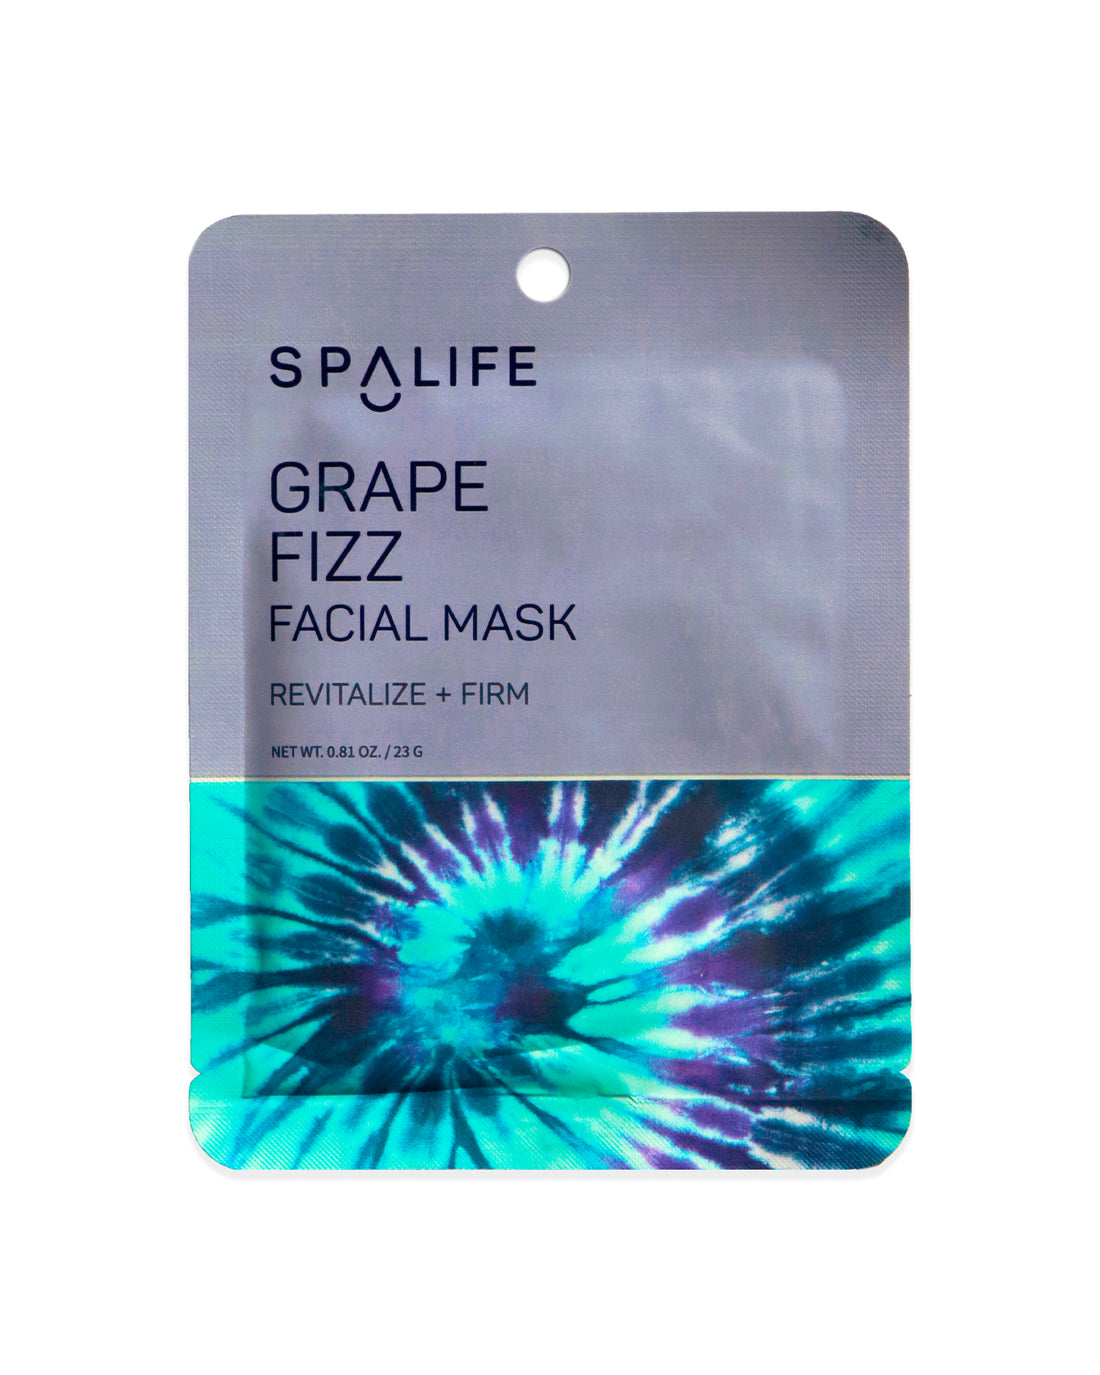 Grape_fizz_facial_mask_packet-201